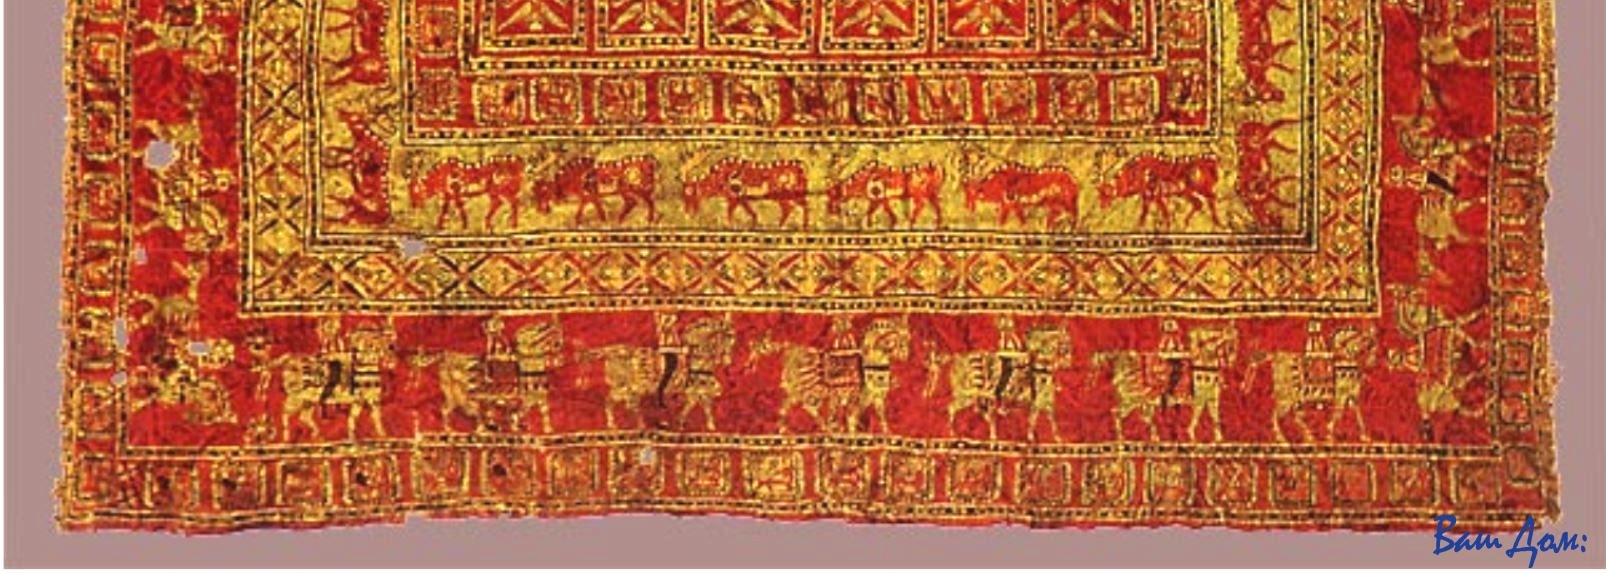 ковер пызырик-персидские ковры